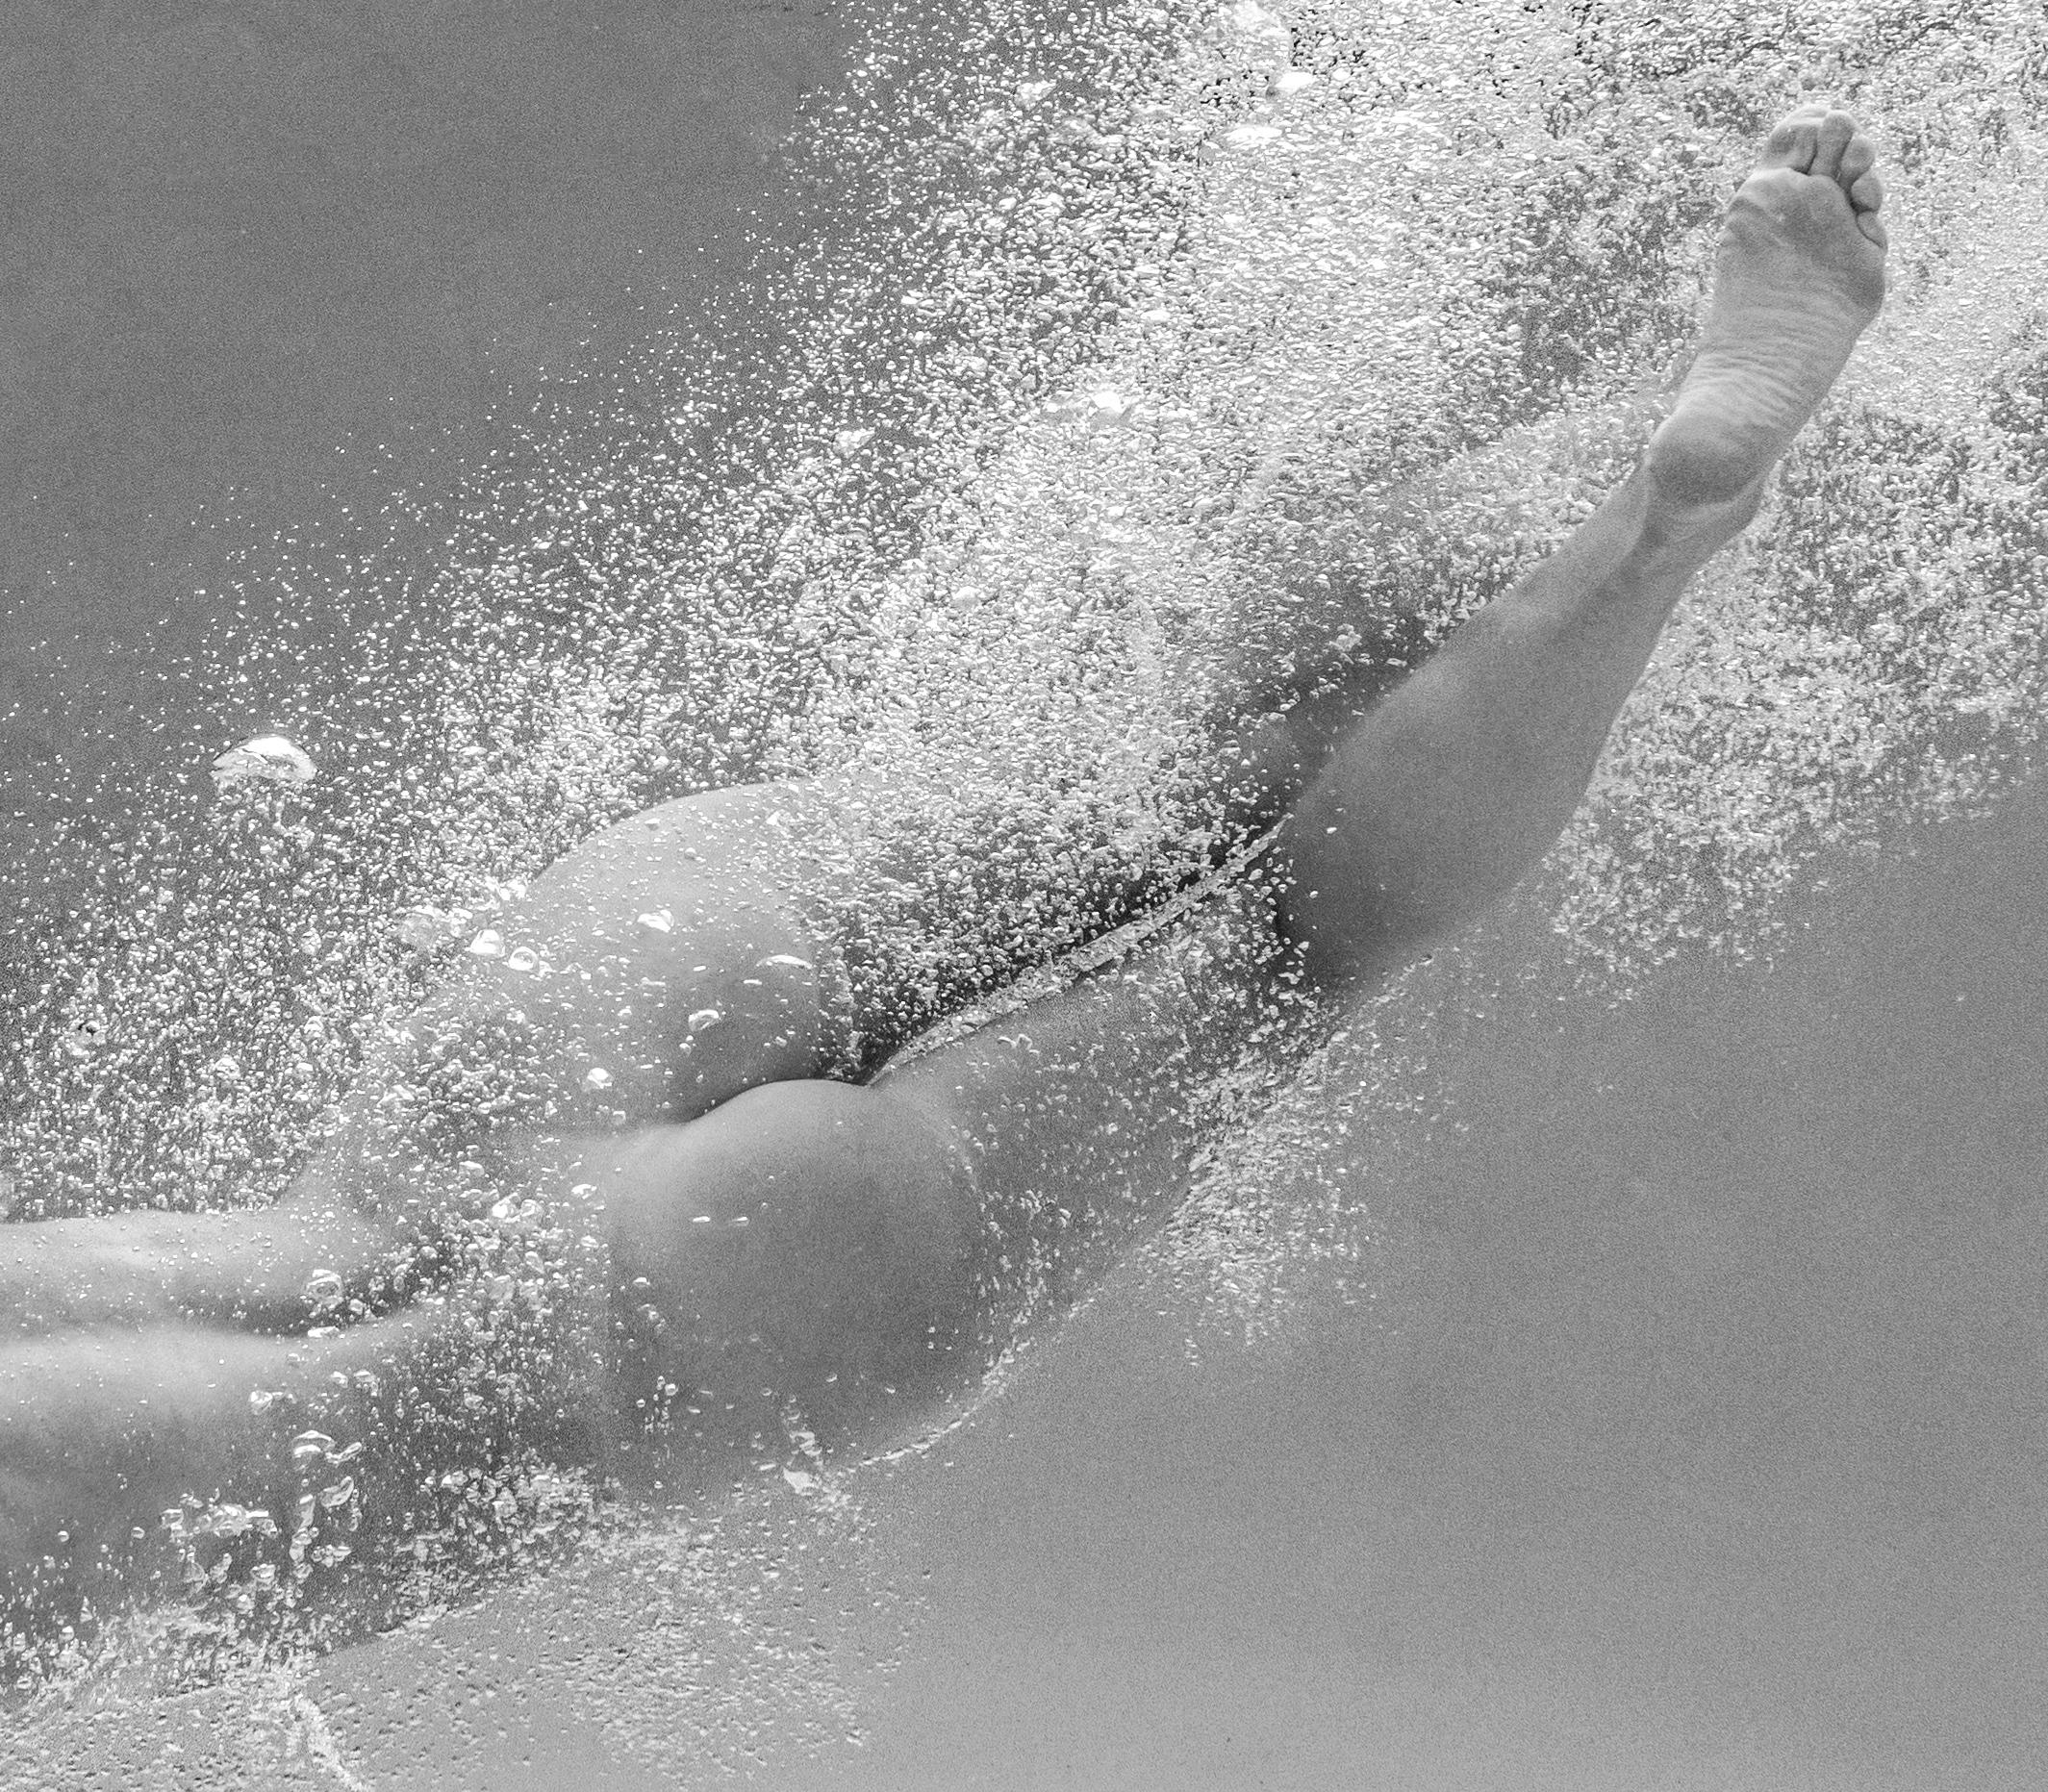 Eine Unterwasser-Schwarz-Weiß-Aufnahme einer jungen nackten Frau in einem Schwimmbecken.  

Original-Pigmentdruck in Galerie-Qualität, archiviert  vom Autor signiert. 
Limitierte Auflage von 24 Stück
Papierformat: 44